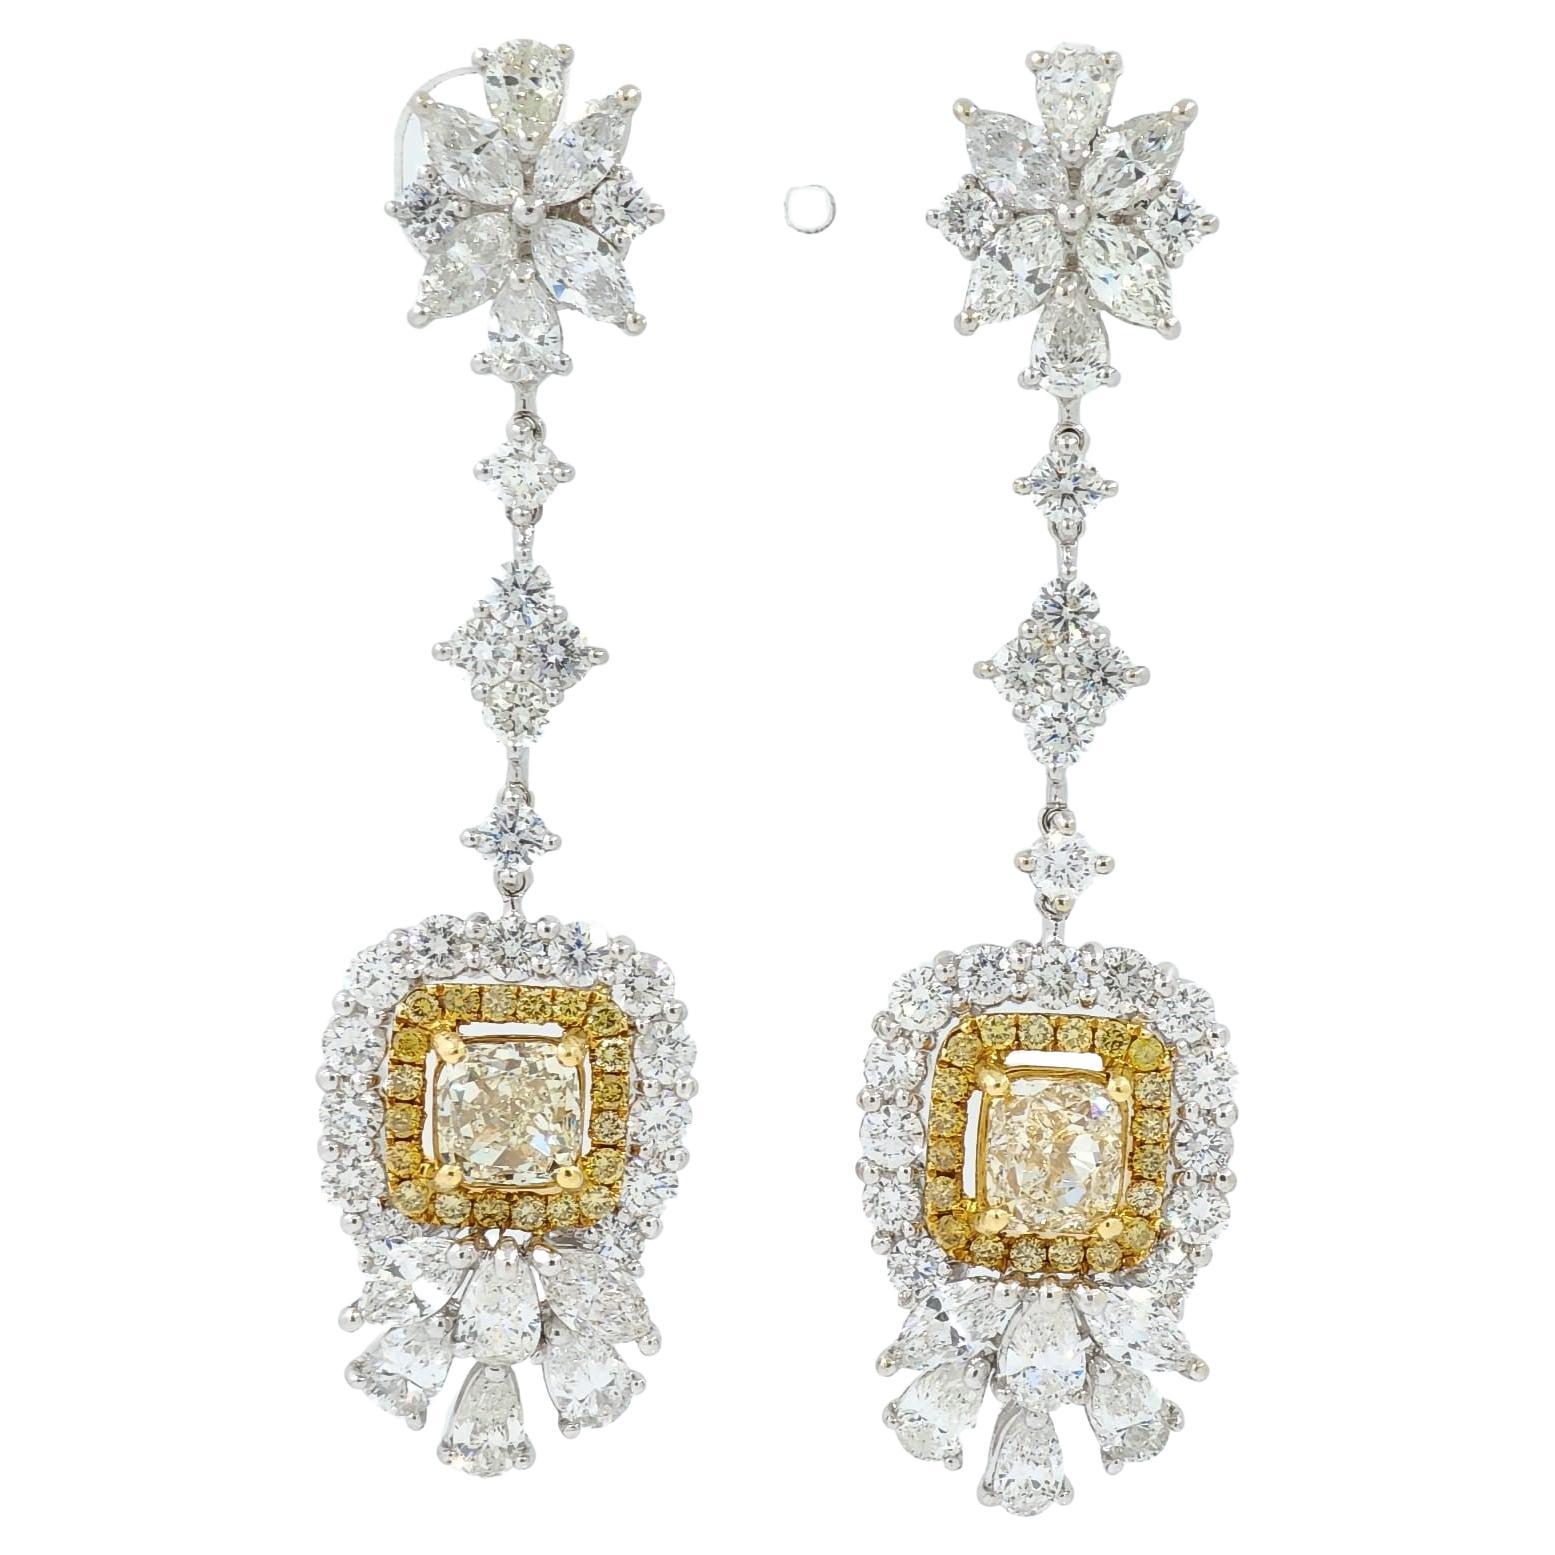 IGI Certified Fancy Yellow Diamond Dangle Drop Earring in 18K White Gold